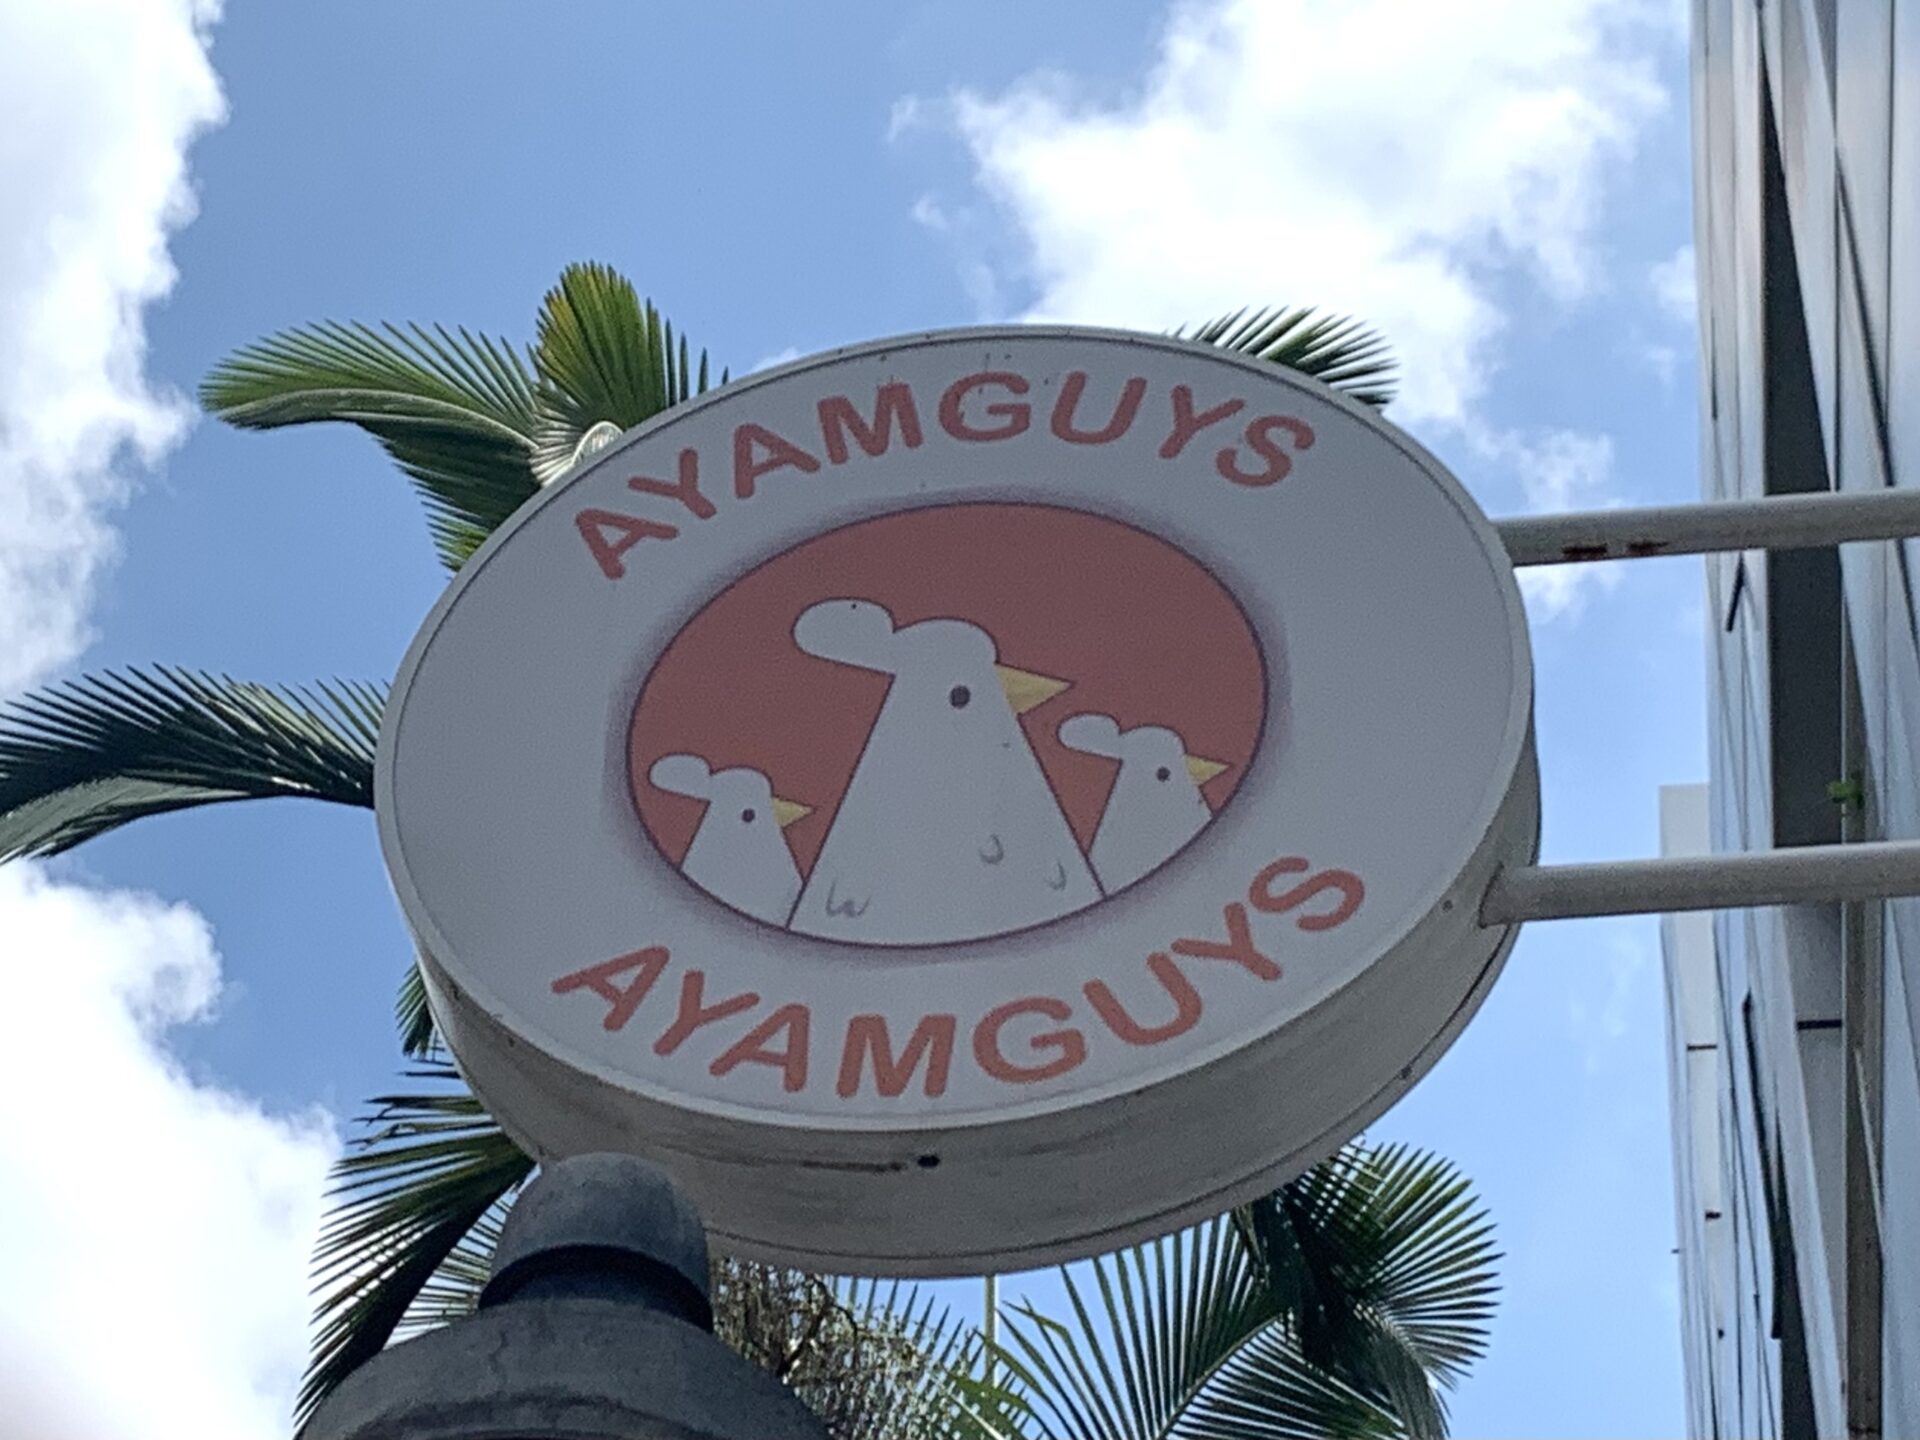 Ayamguys - Signage